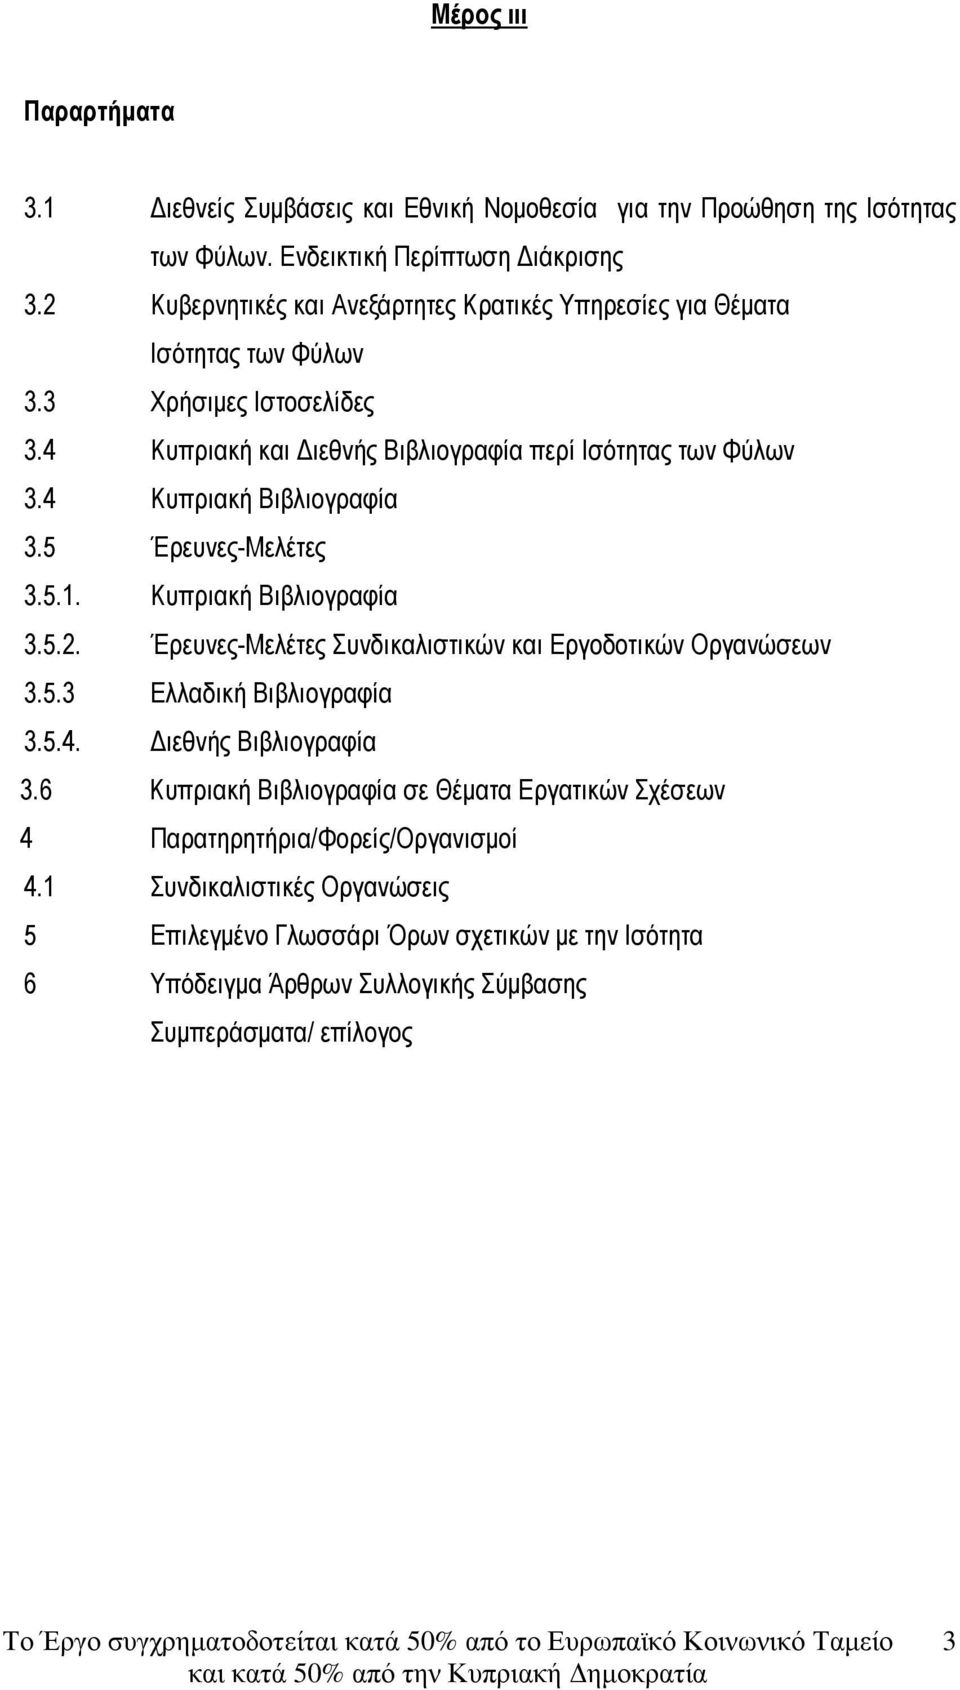 4 Κυπριακή Βιβλιογραφία 3.5 Έρευνες-Μελέτες 3.5.1. Κυπριακή Βιβλιογραφία 3.5.2. Έρευνες-Μελέτες Συνδικαλιστικών και Εργοδοτικών Οργανώσεων 3.5.3 Ελλαδική Βιβλιογραφία 3.5.4. ιεθνής Βιβλιογραφία 3.